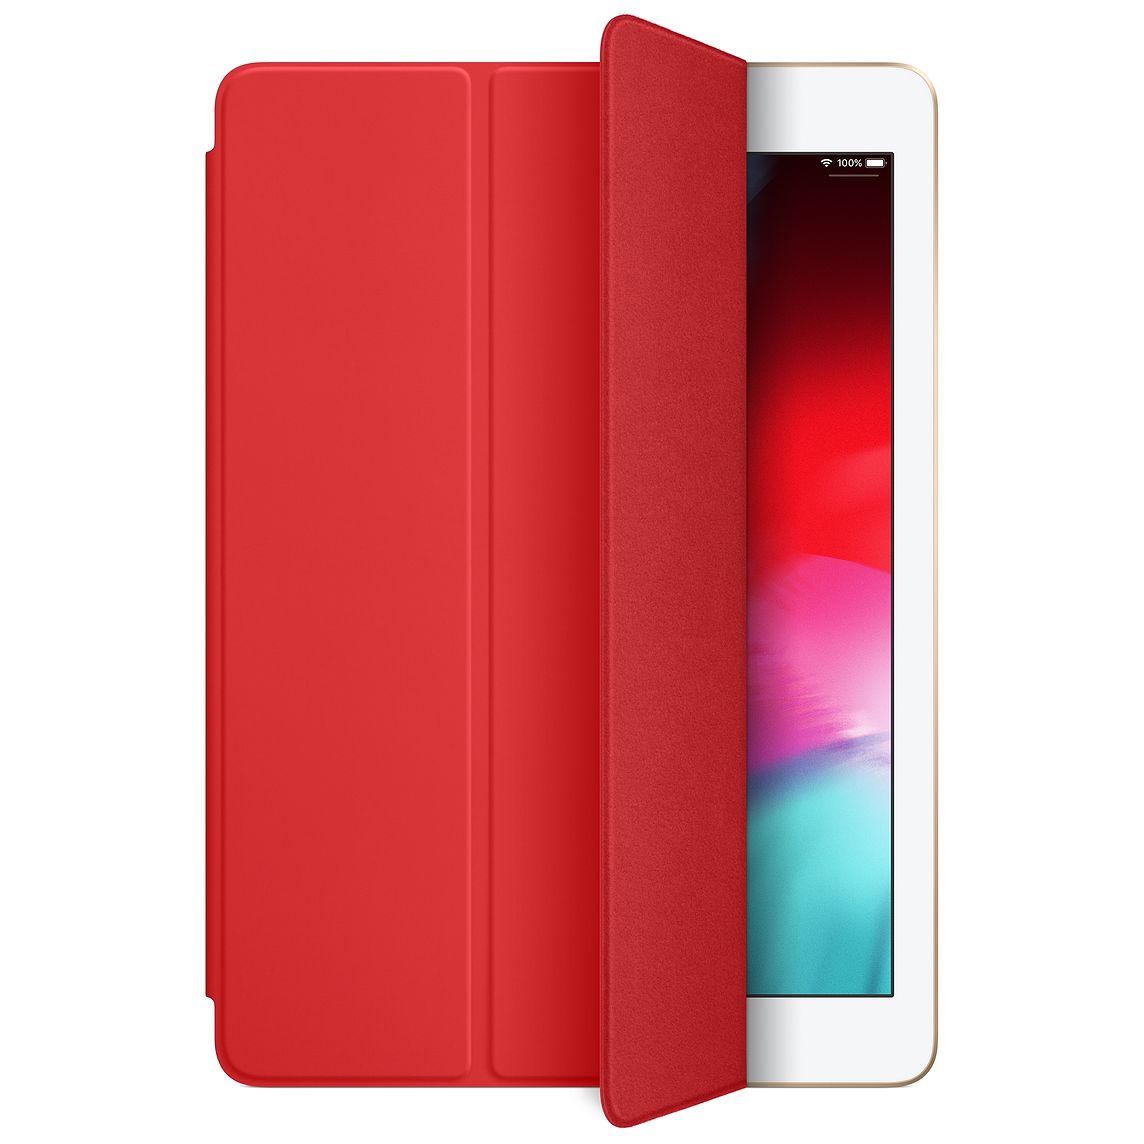 Смарт-кейс iPad (2018) красный